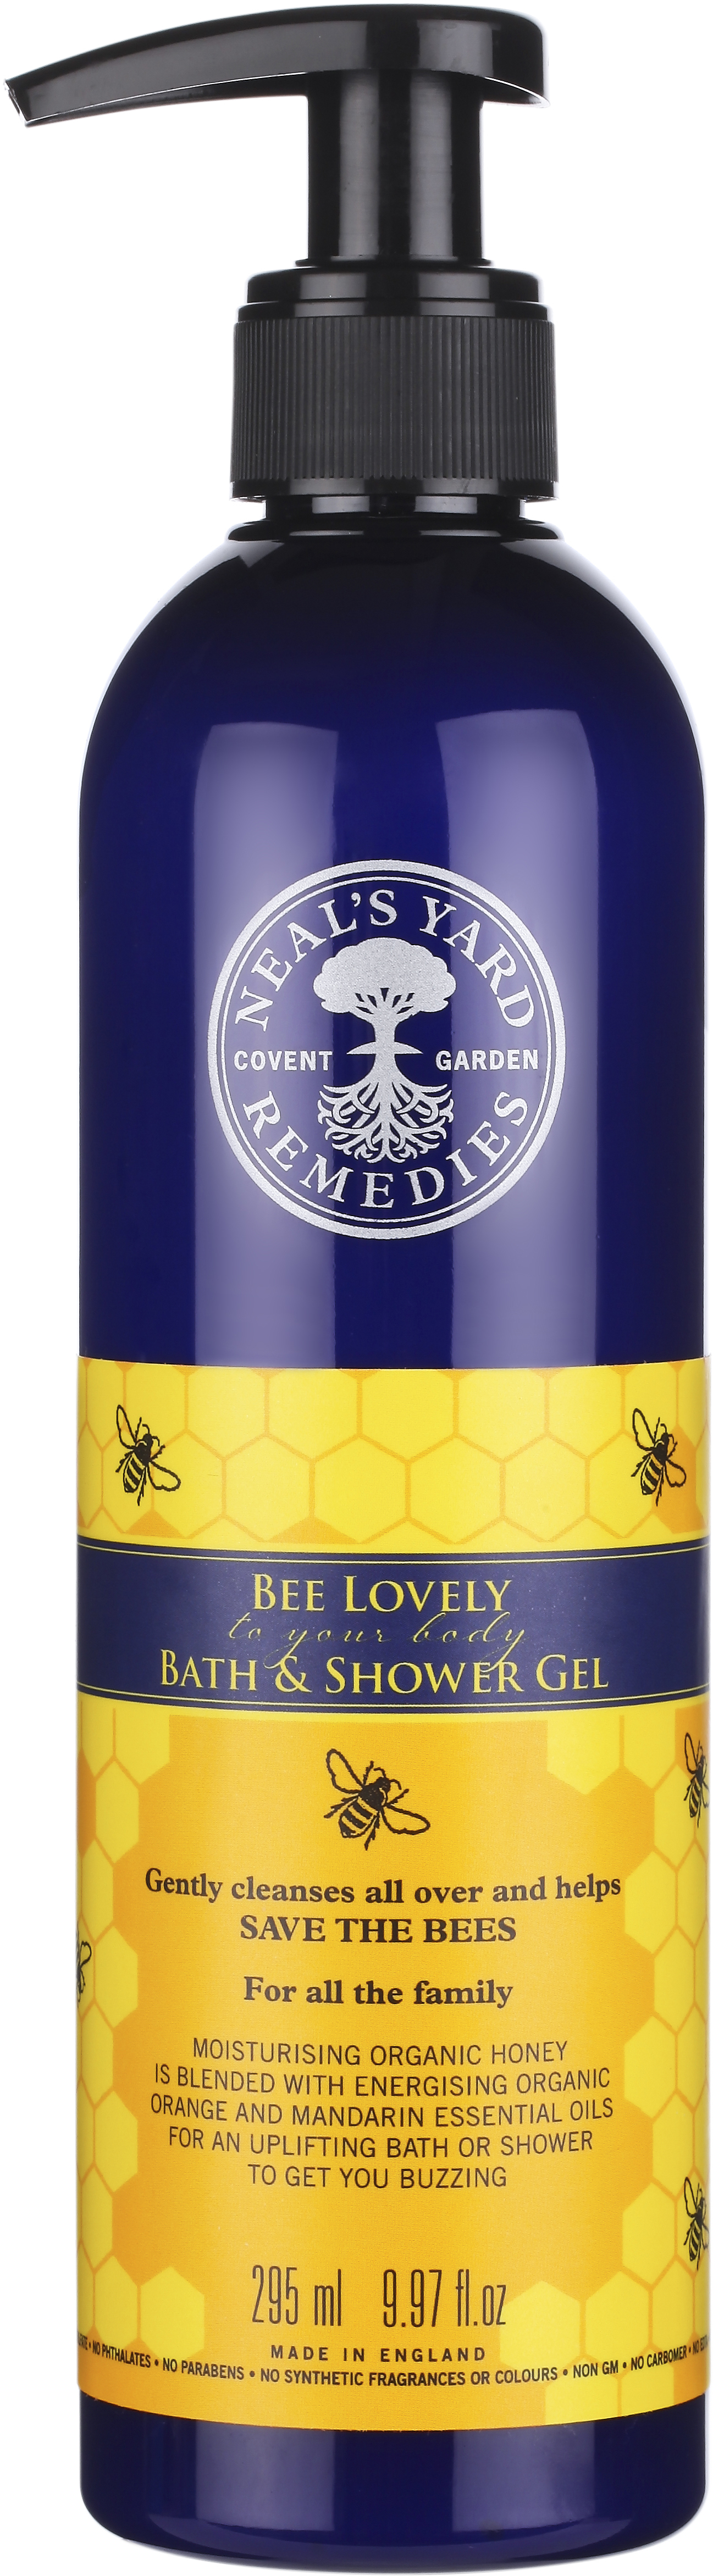 Neal’s Yard Remedies Bee Lovely Bath & Shower Gel 295ml